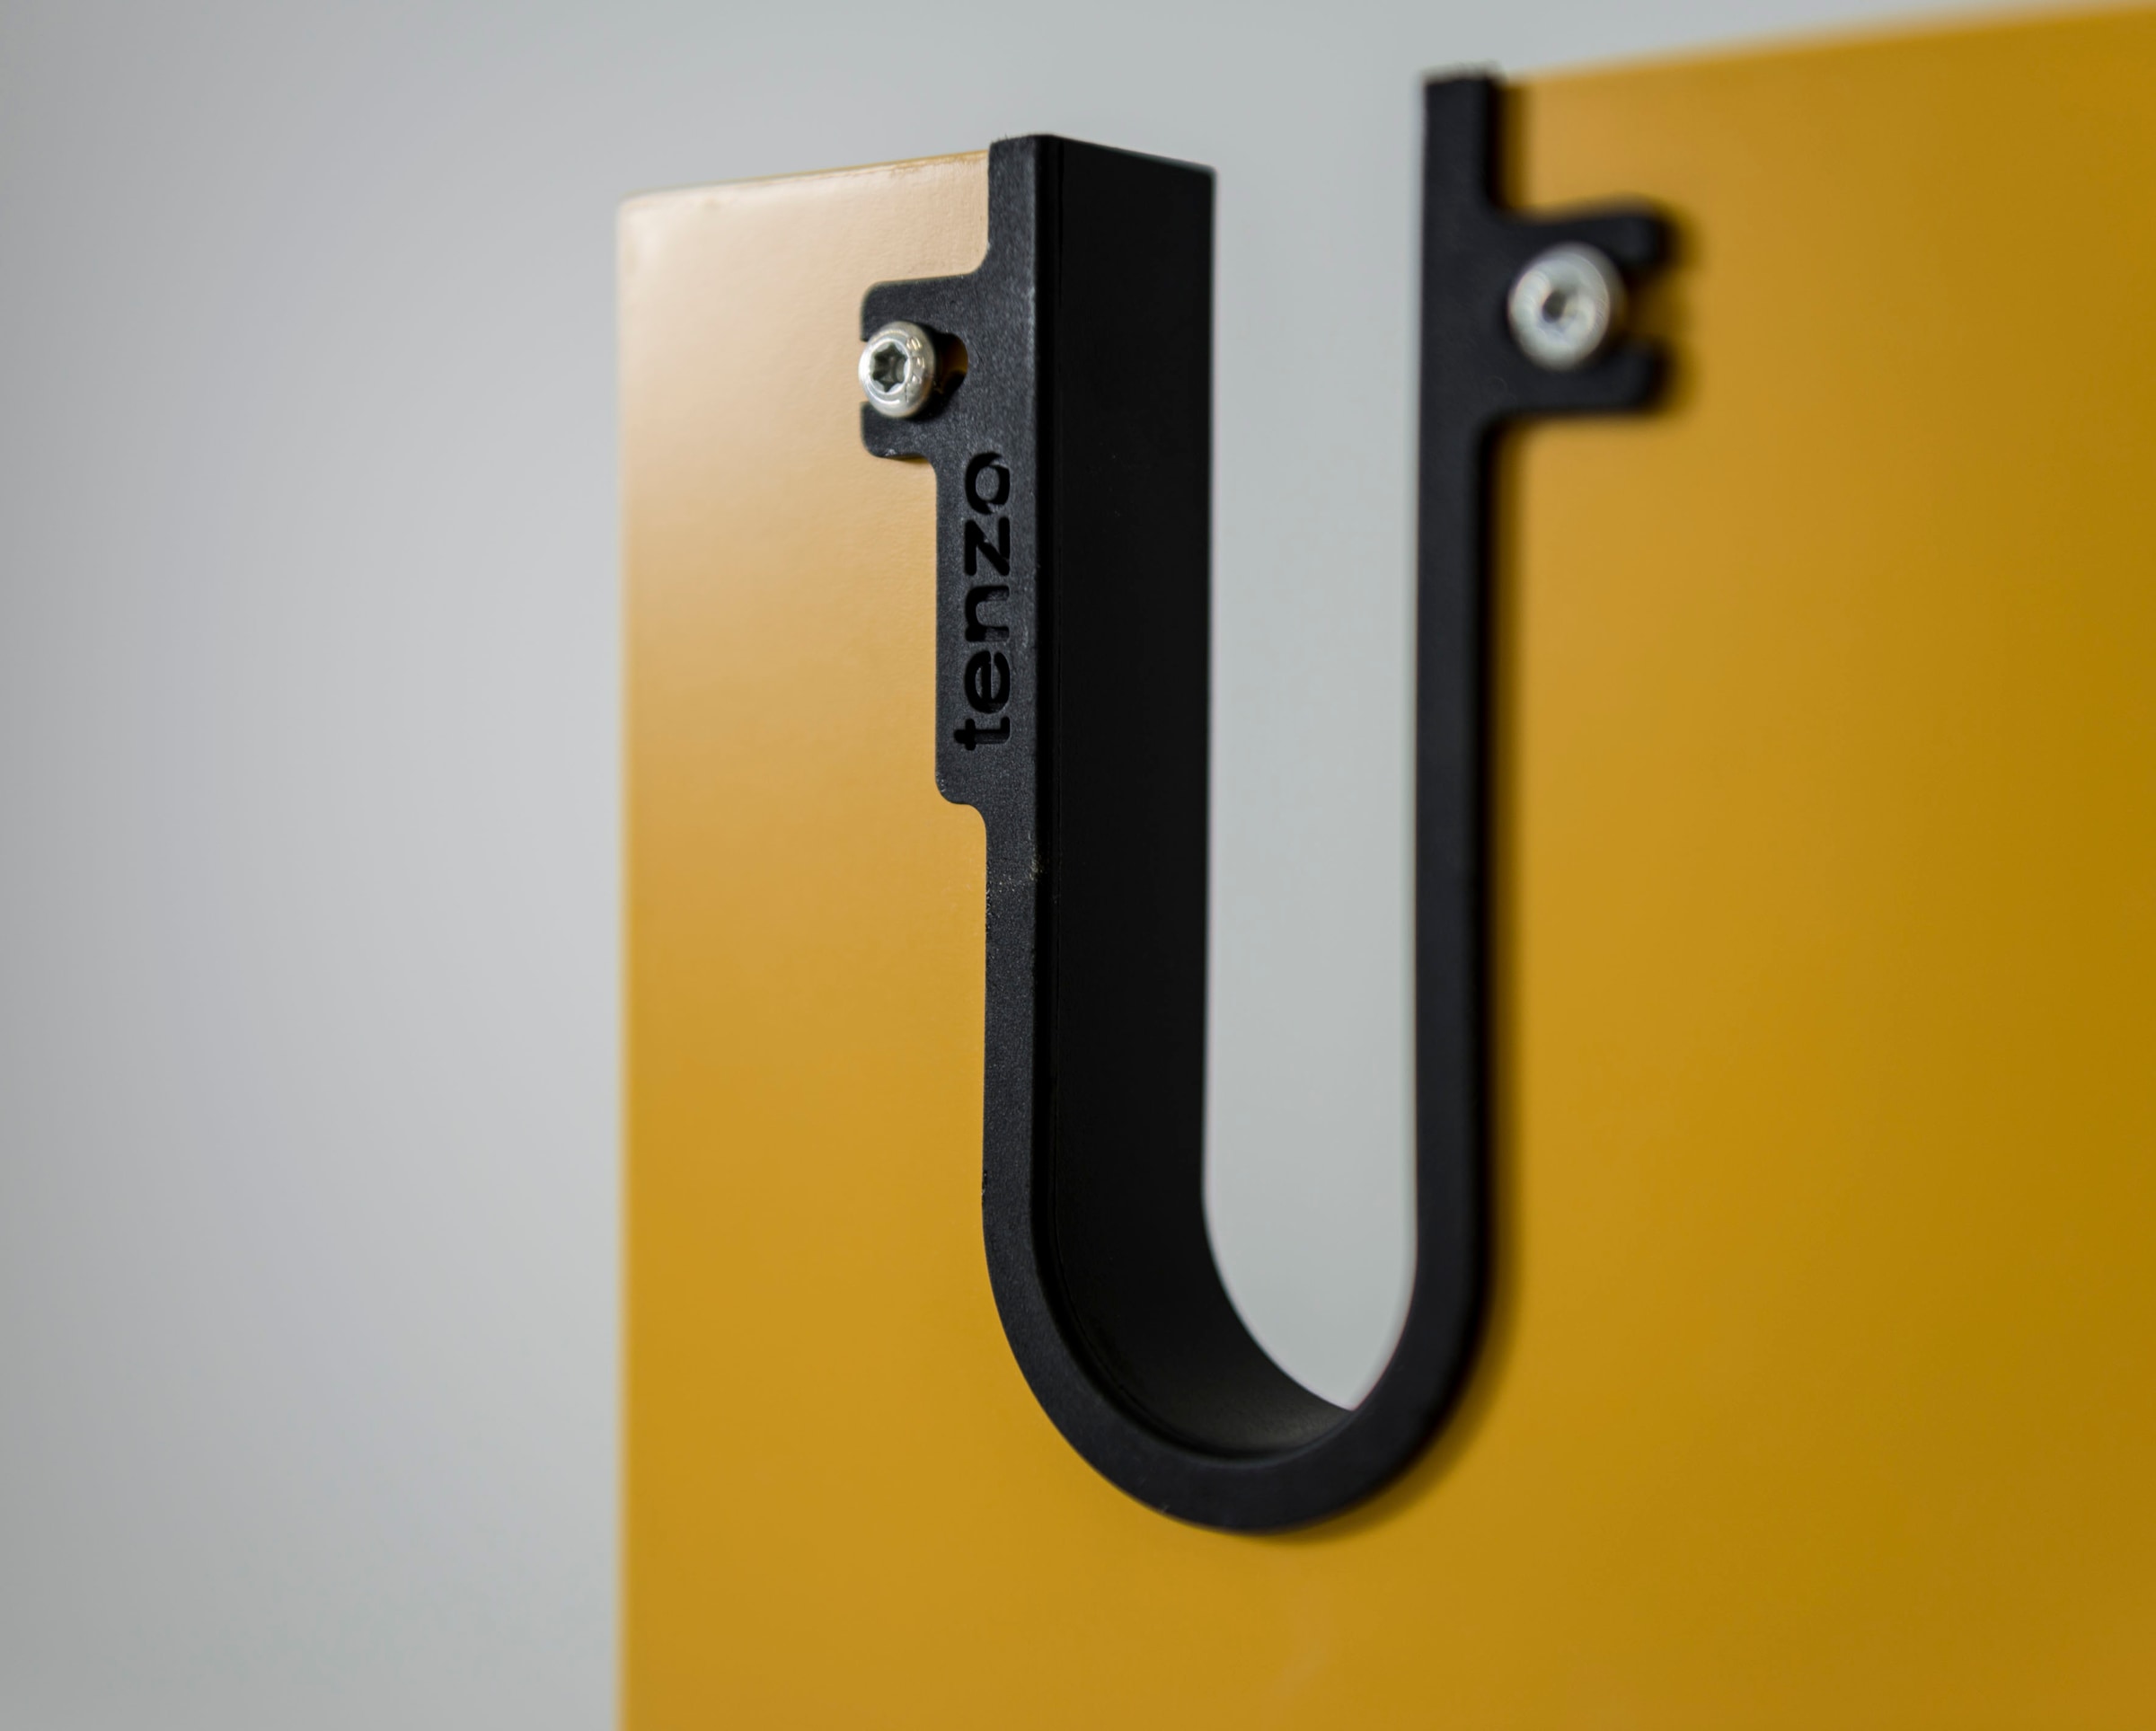 Tenzo Sideboard »UNO«, mit 2 Türen und 3 Schubladen, Design von Olivier Toulouse By Tenzo